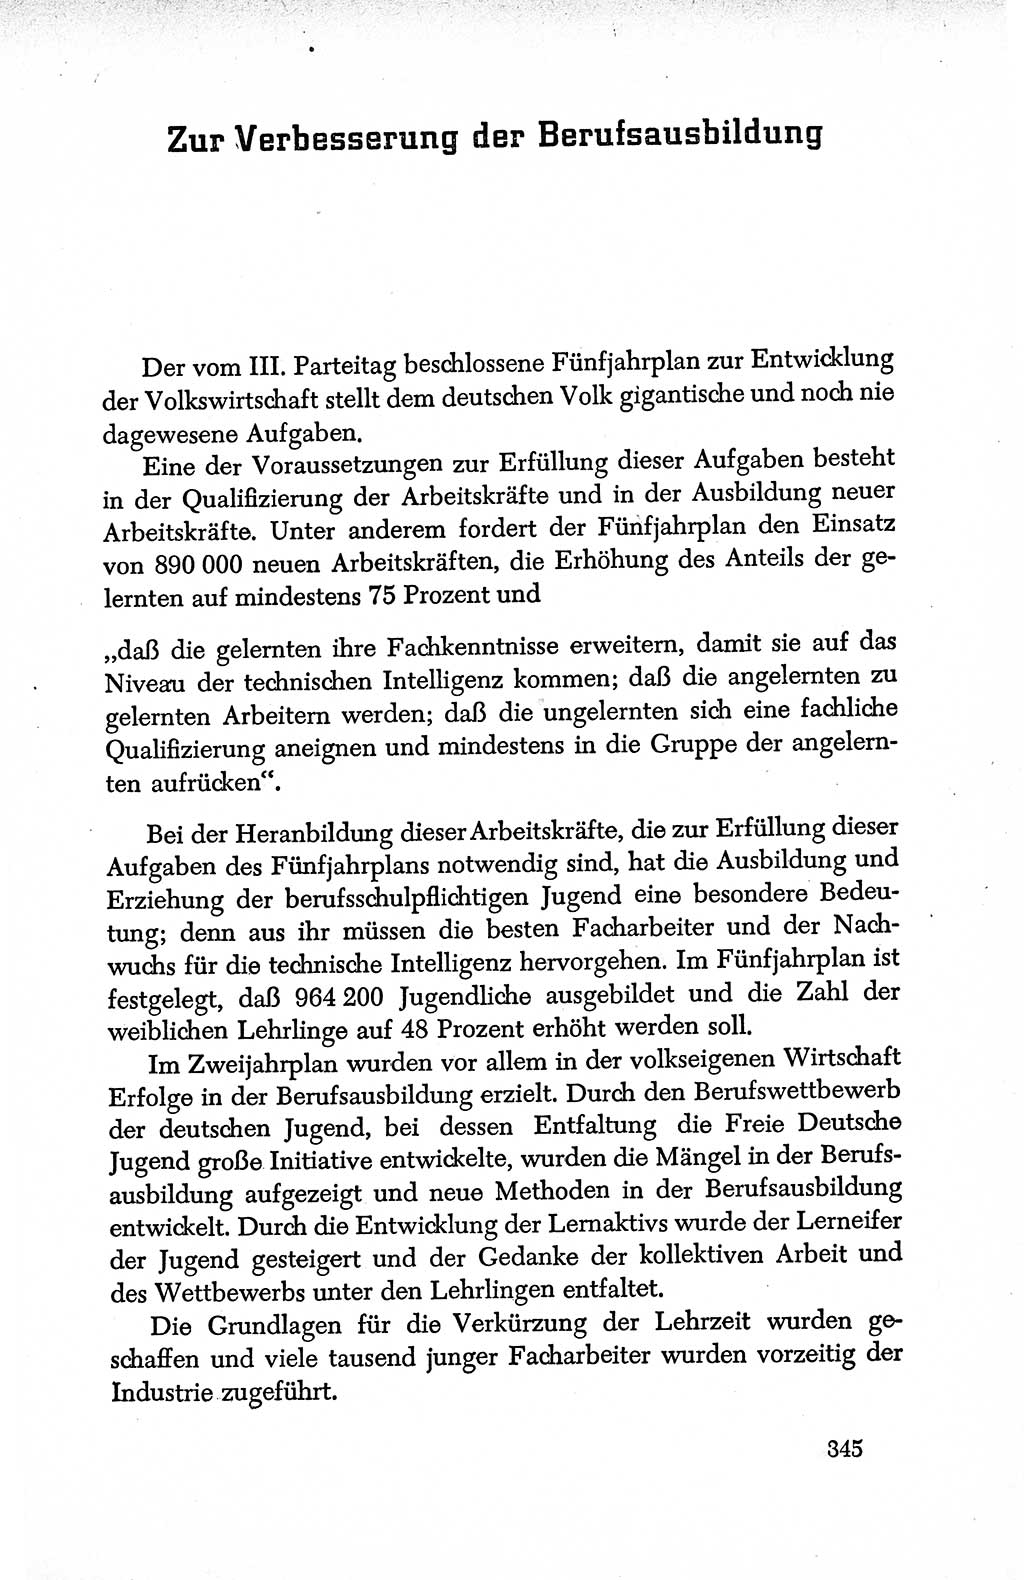 Dokumente der Sozialistischen Einheitspartei Deutschlands (SED) [Deutsche Demokratische Republik (DDR)] 1950-1952, Seite 345 (Dok. SED DDR 1950-1952, S. 345)